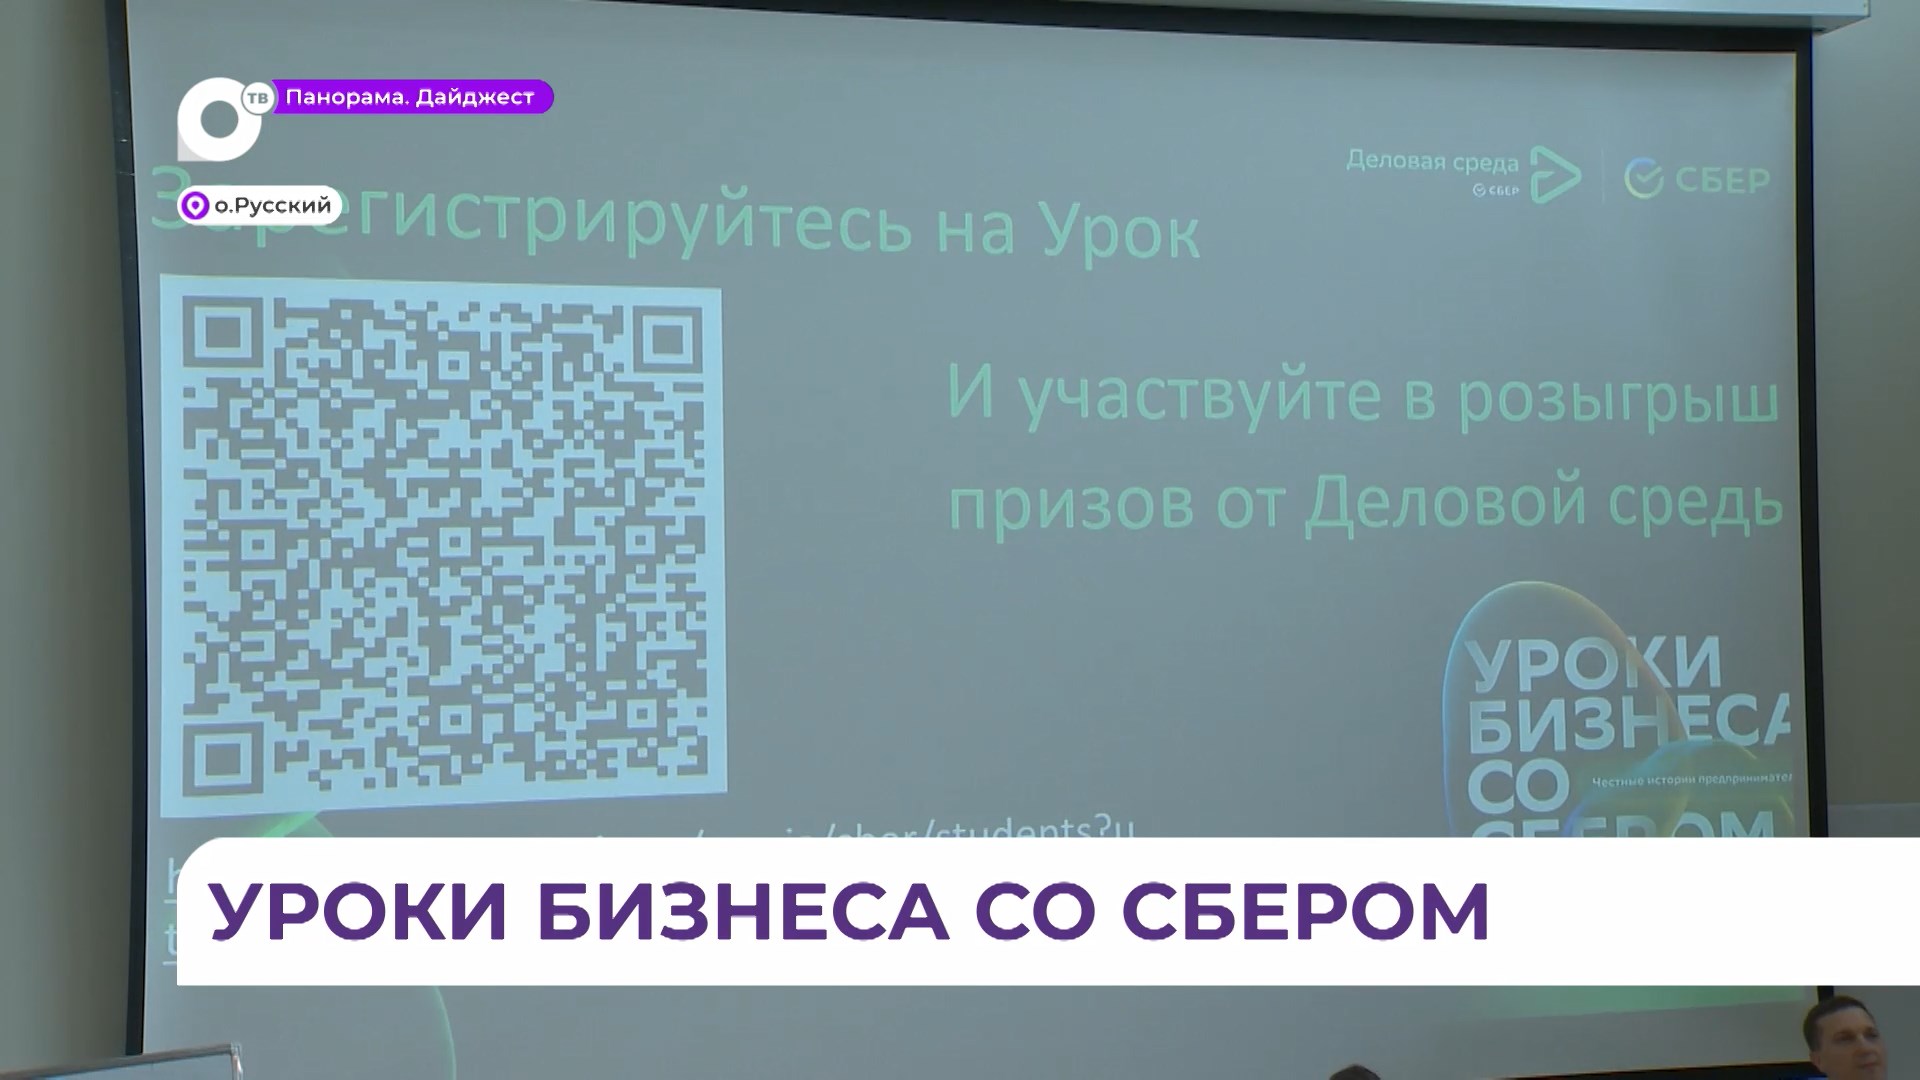 Во Владивостоке проходят «Уроки бизнеса со Сбером»